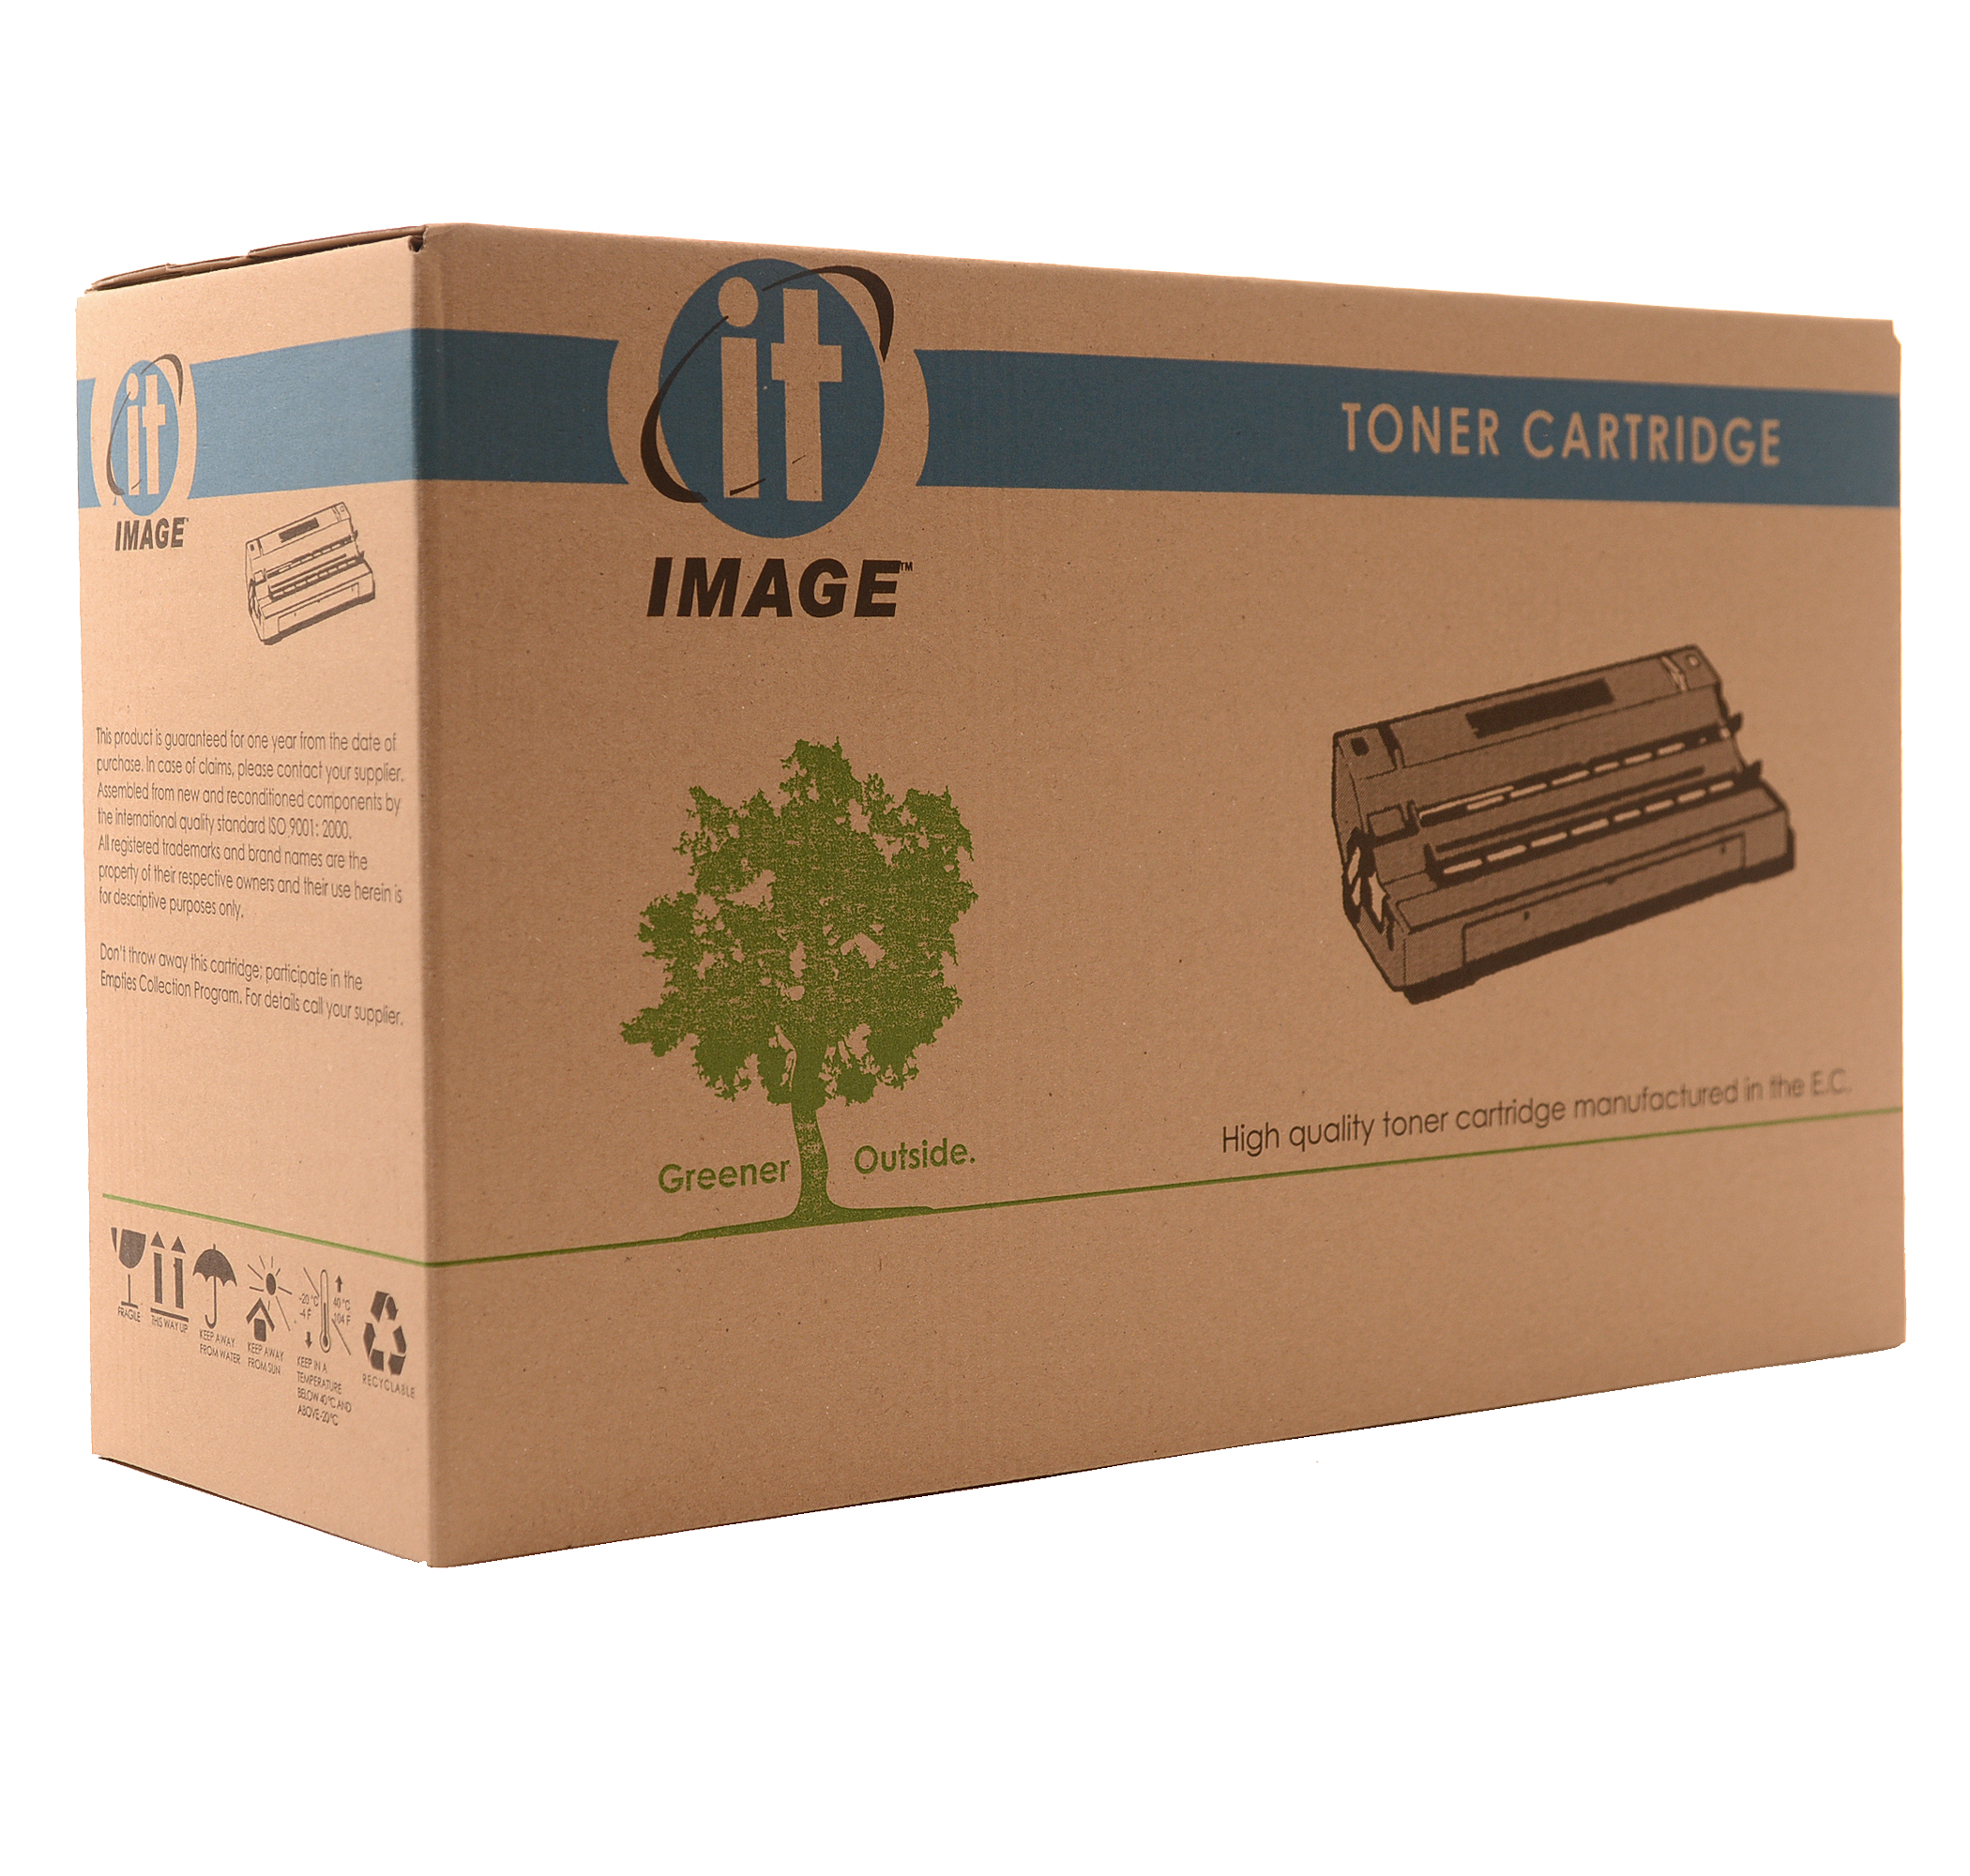 съвместима тонер касета за принтери и печатащи устройства на Canon i-SENSYS MF641 Cartridge 054 Y. Ниски цени, прецизно изпълнение, високо качество.